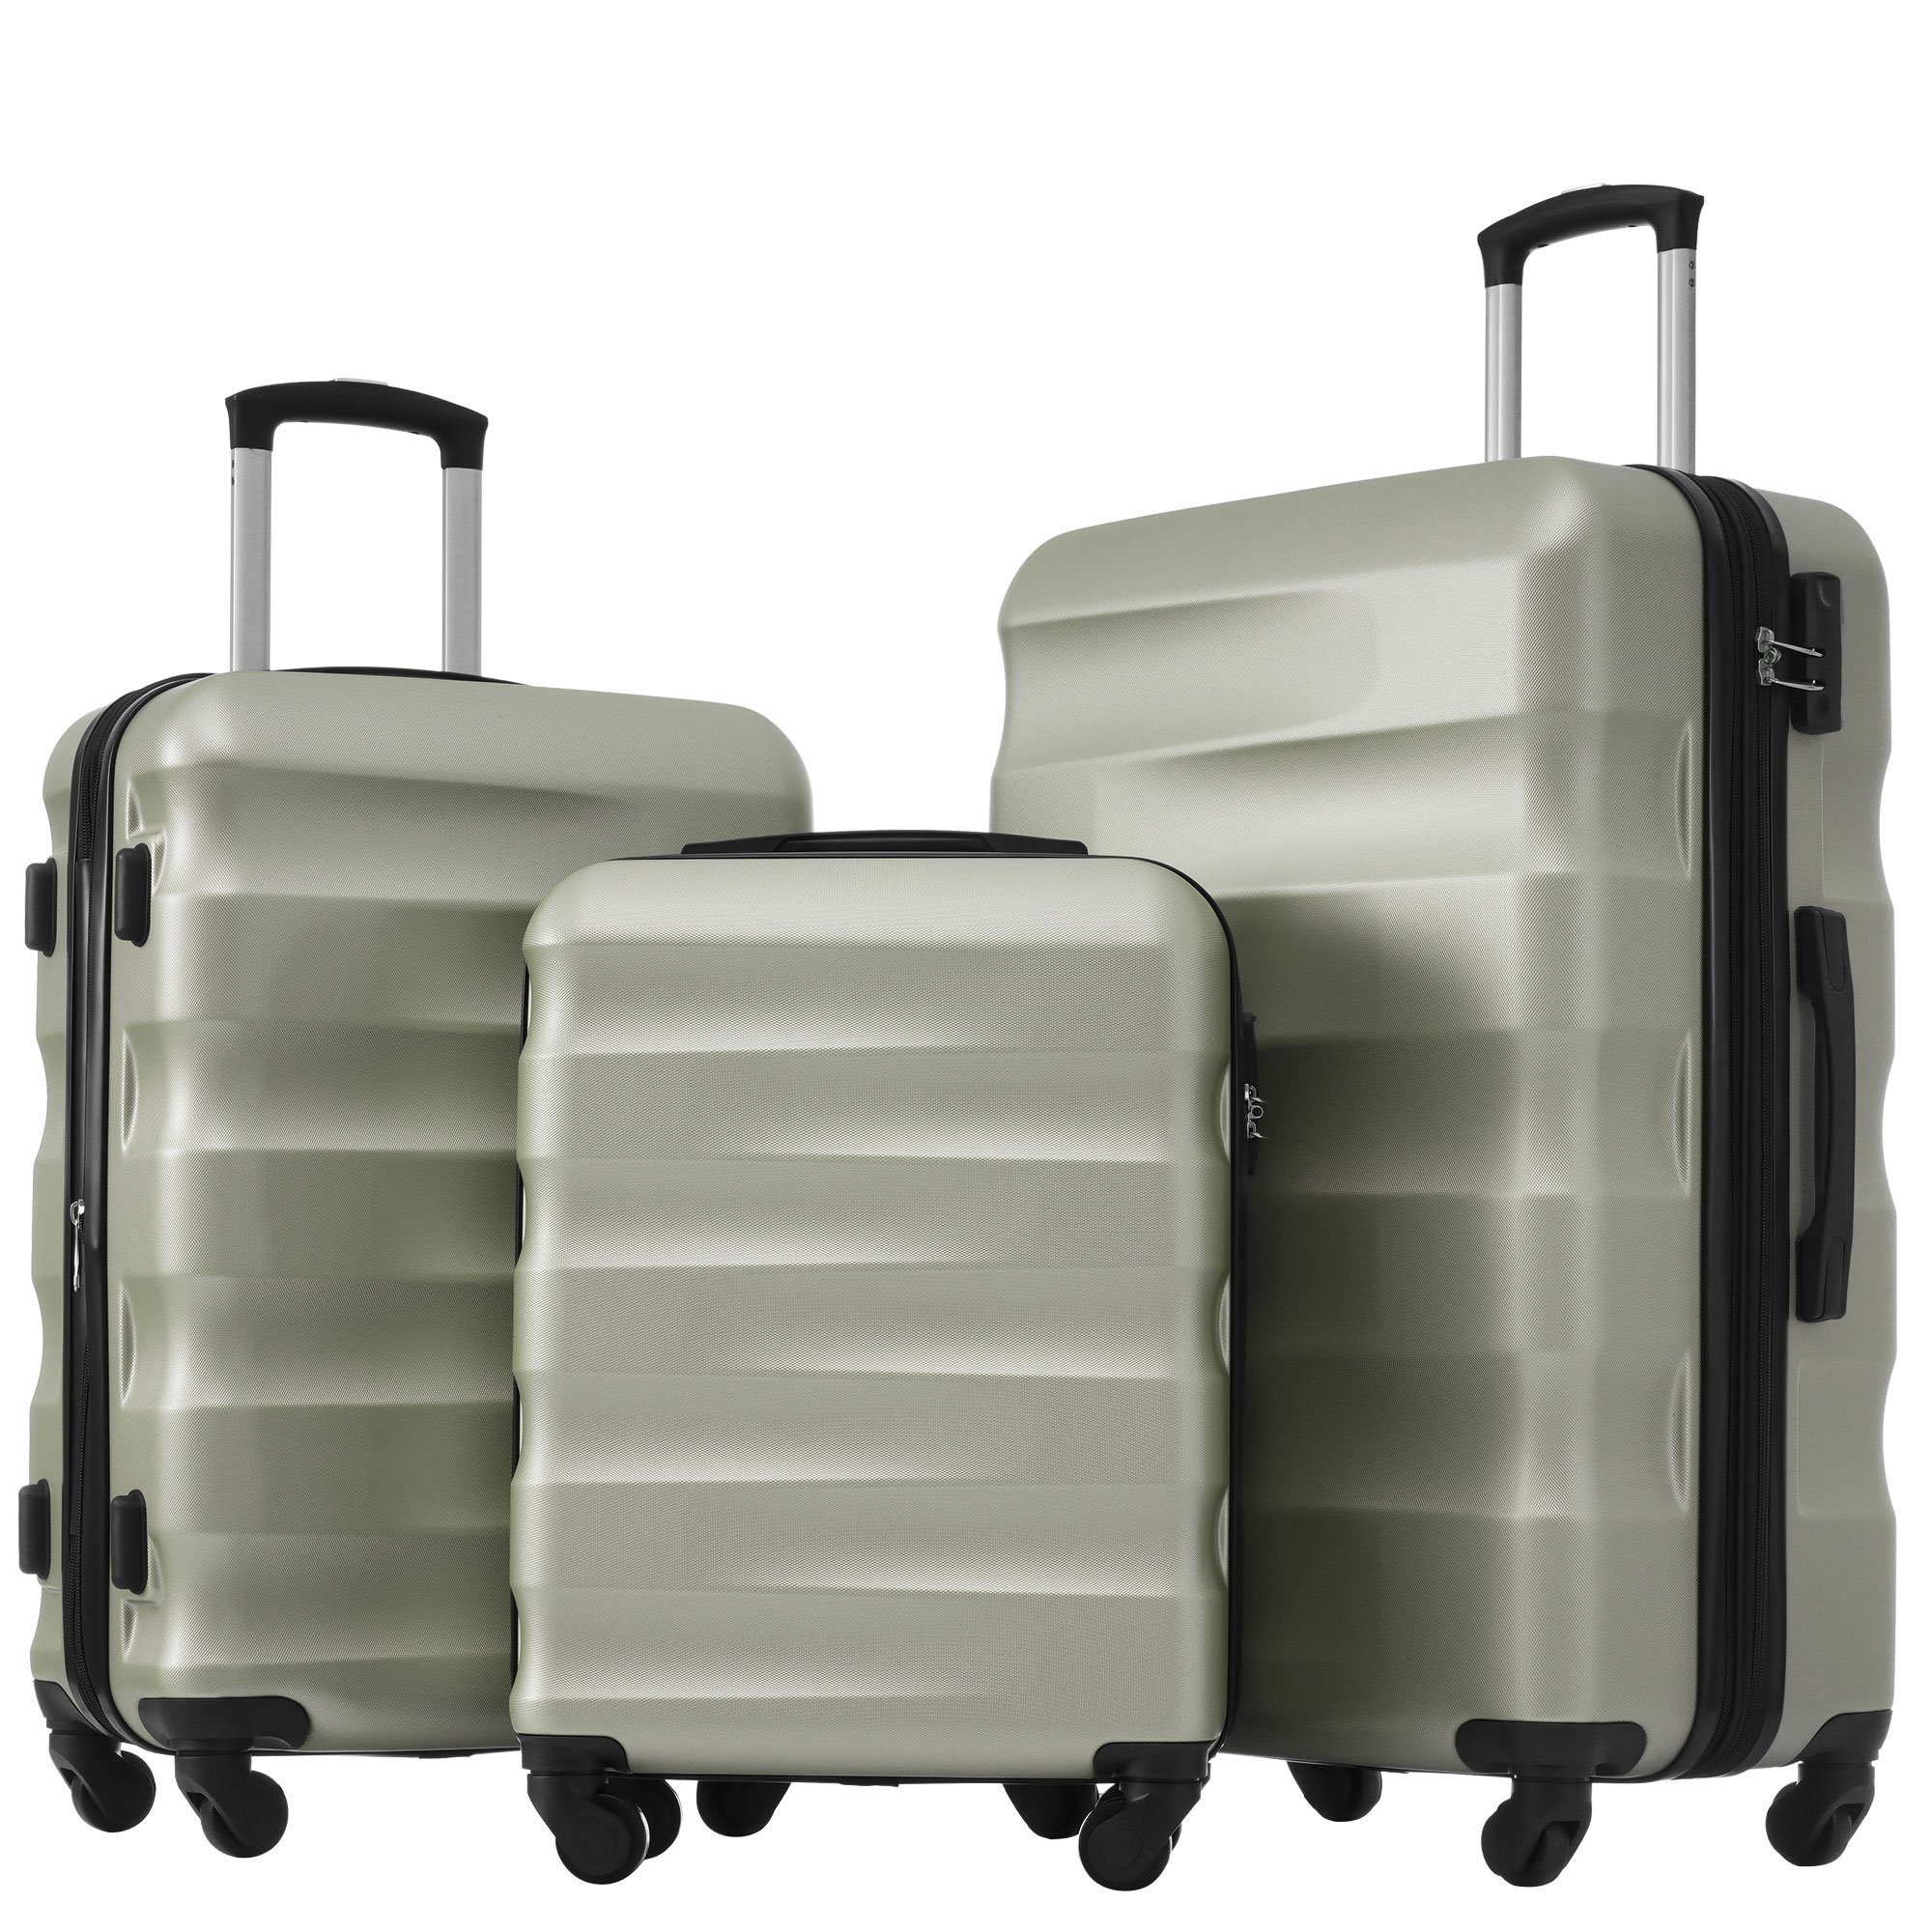 Ulife Trolleyset Kofferset Reisekoffer ABS-Material, TSA Zollschloss, 360° -Räder, 4 Rollen, (3 tlg) Grün